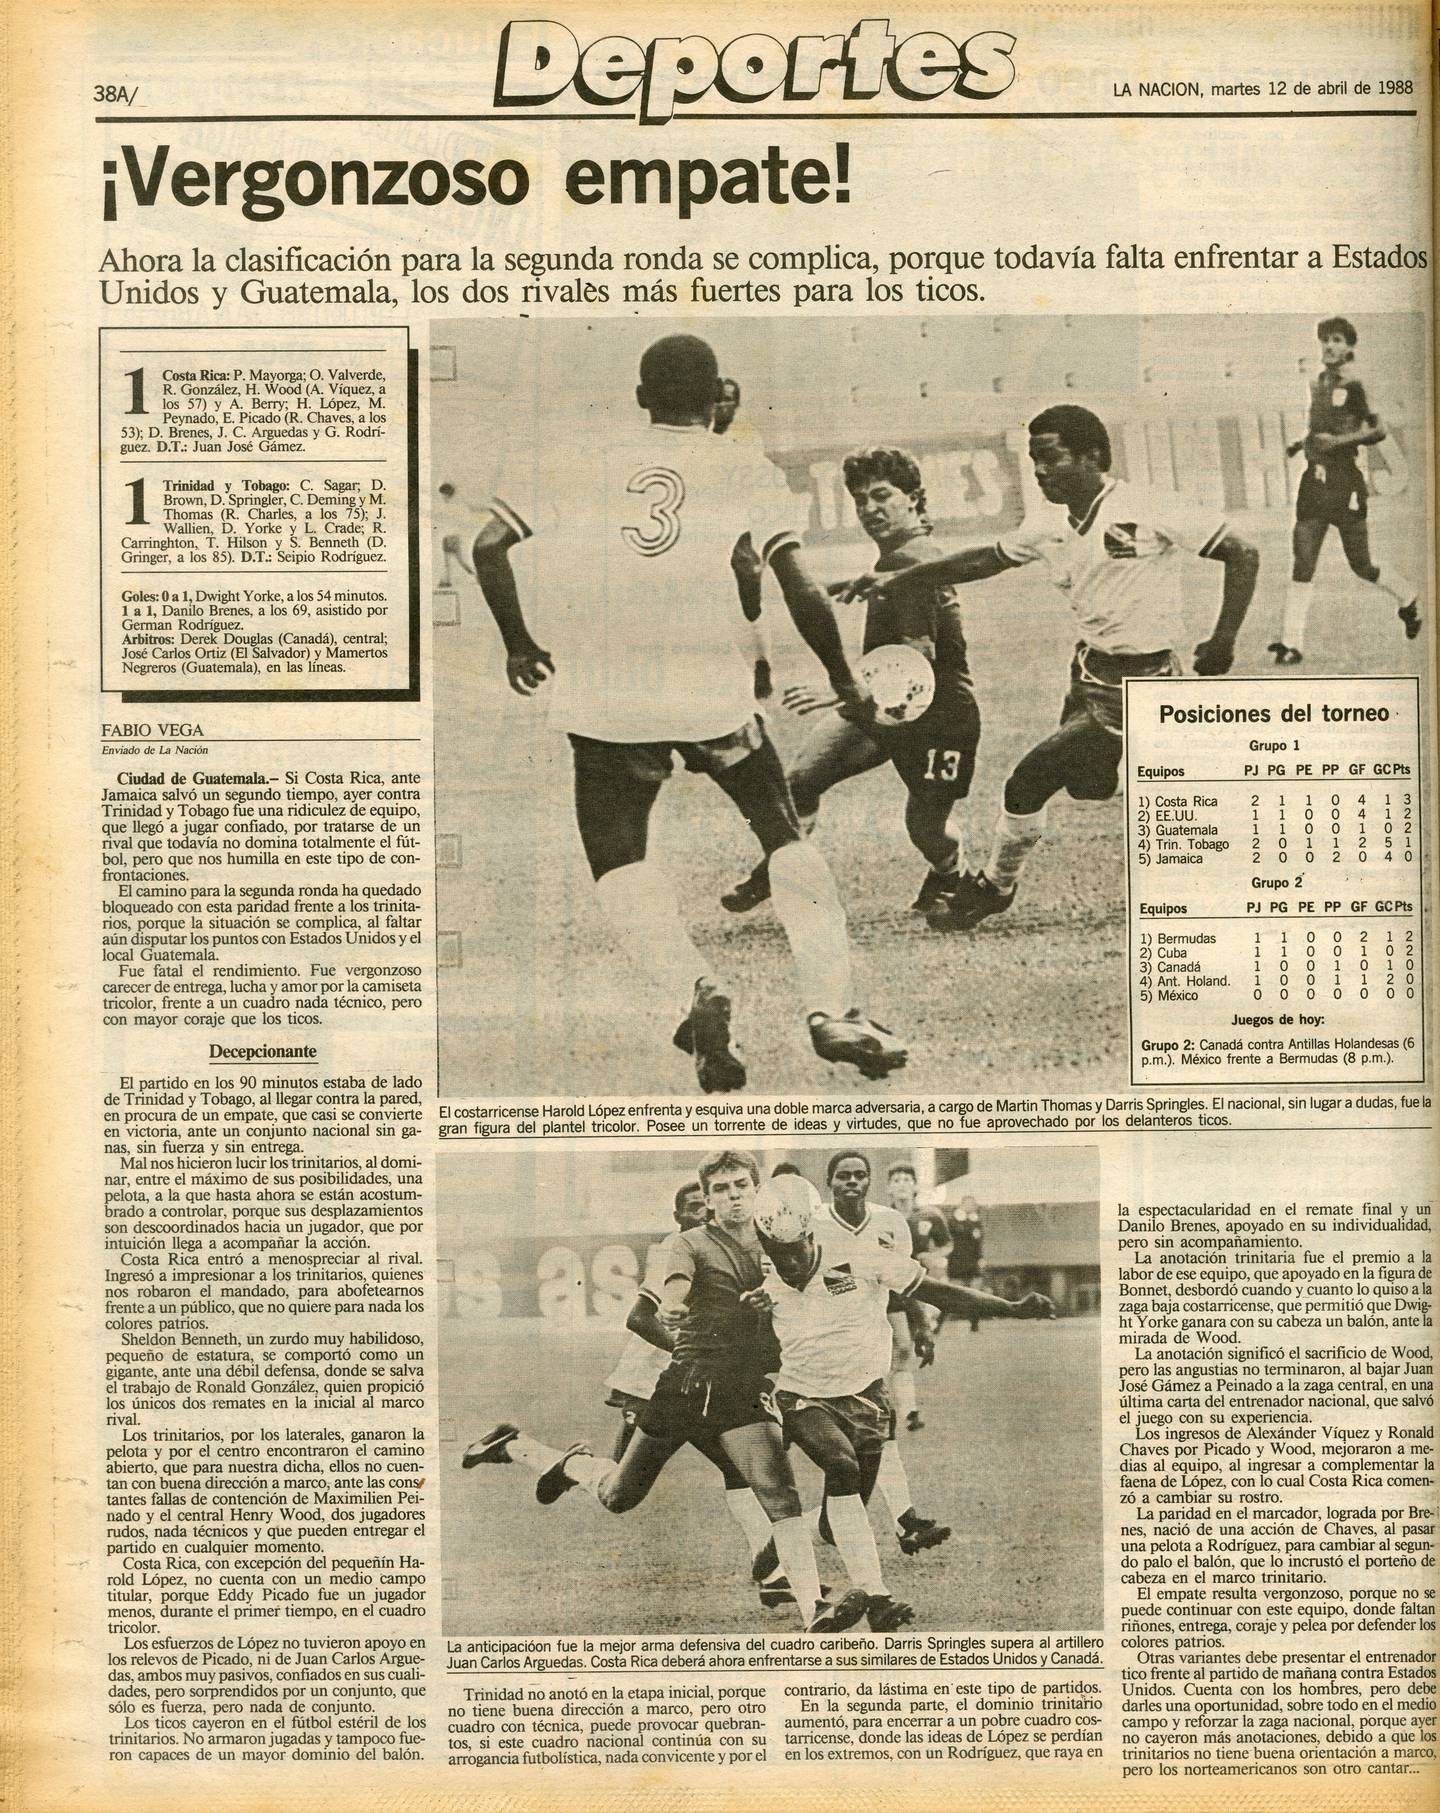 'La Nación' tildó de vergonzoso el empate entre Costa Rica y Trinidad y Tobago en el Premundial Sub-20 de 1988.